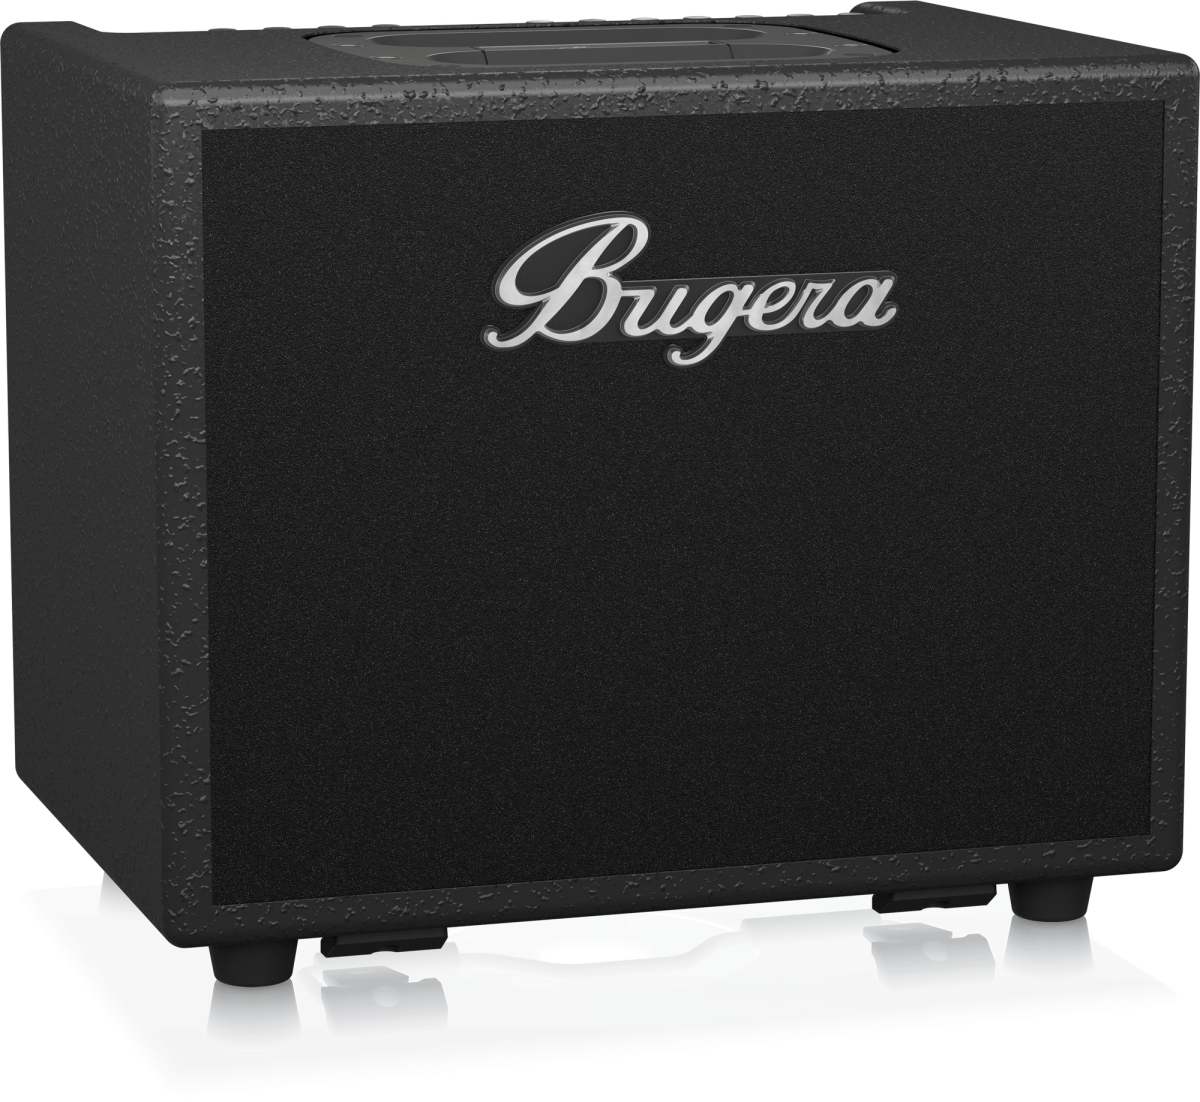 BUGERA AC60 - комбо для акустических инструментов, 60 Вт, 1х8 " Turbosound, 2 канала